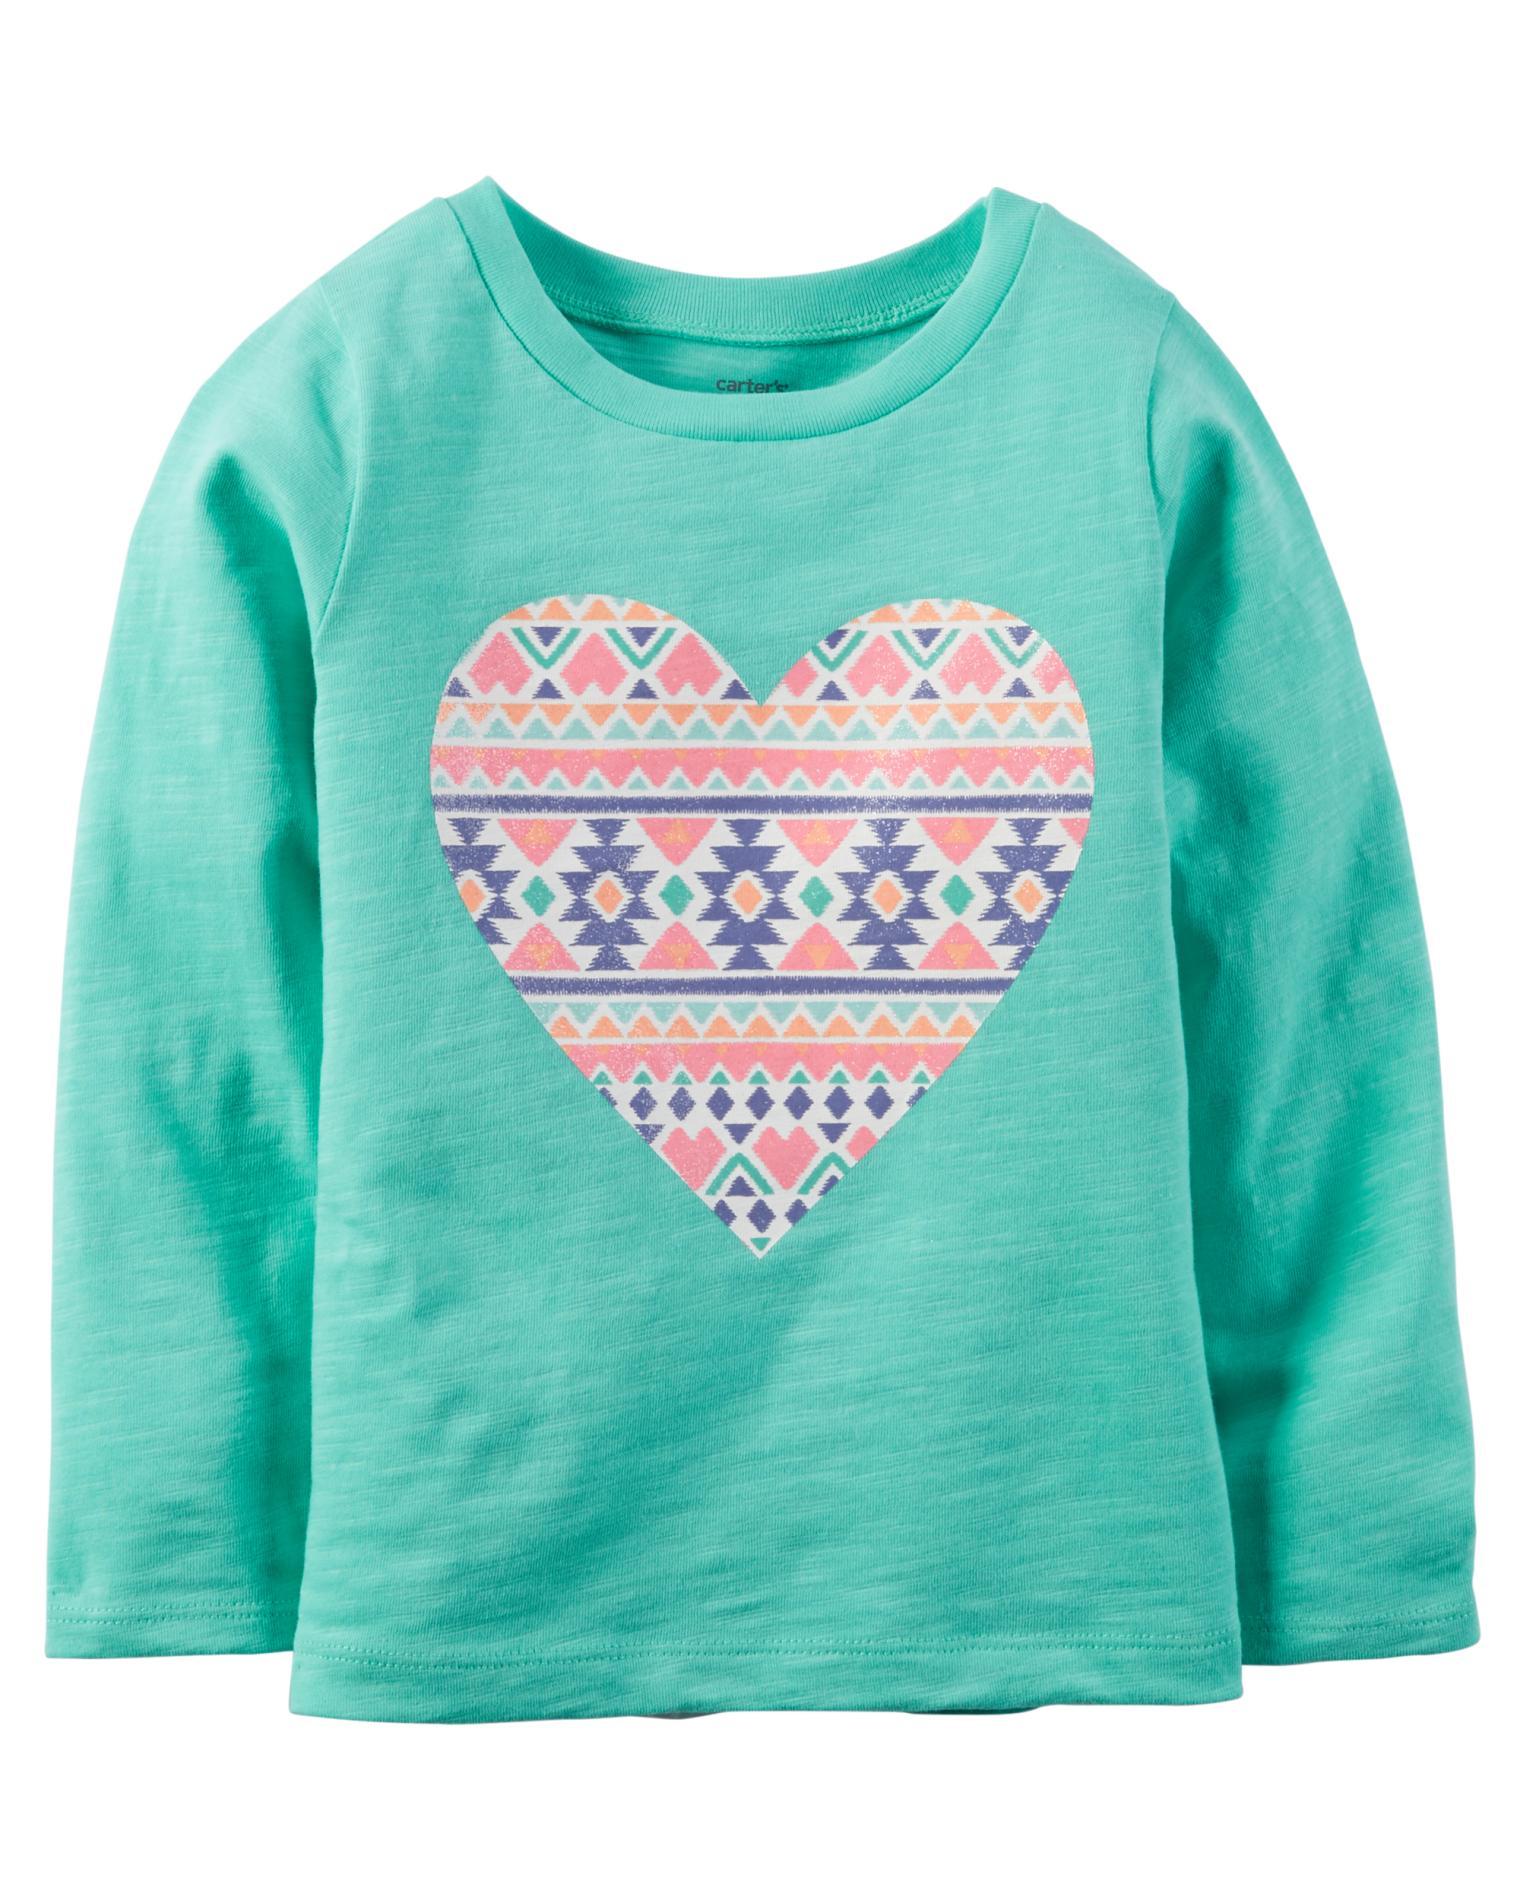 Carter's Girls' Long-Sleeve Graphic T-Shirt - Heart